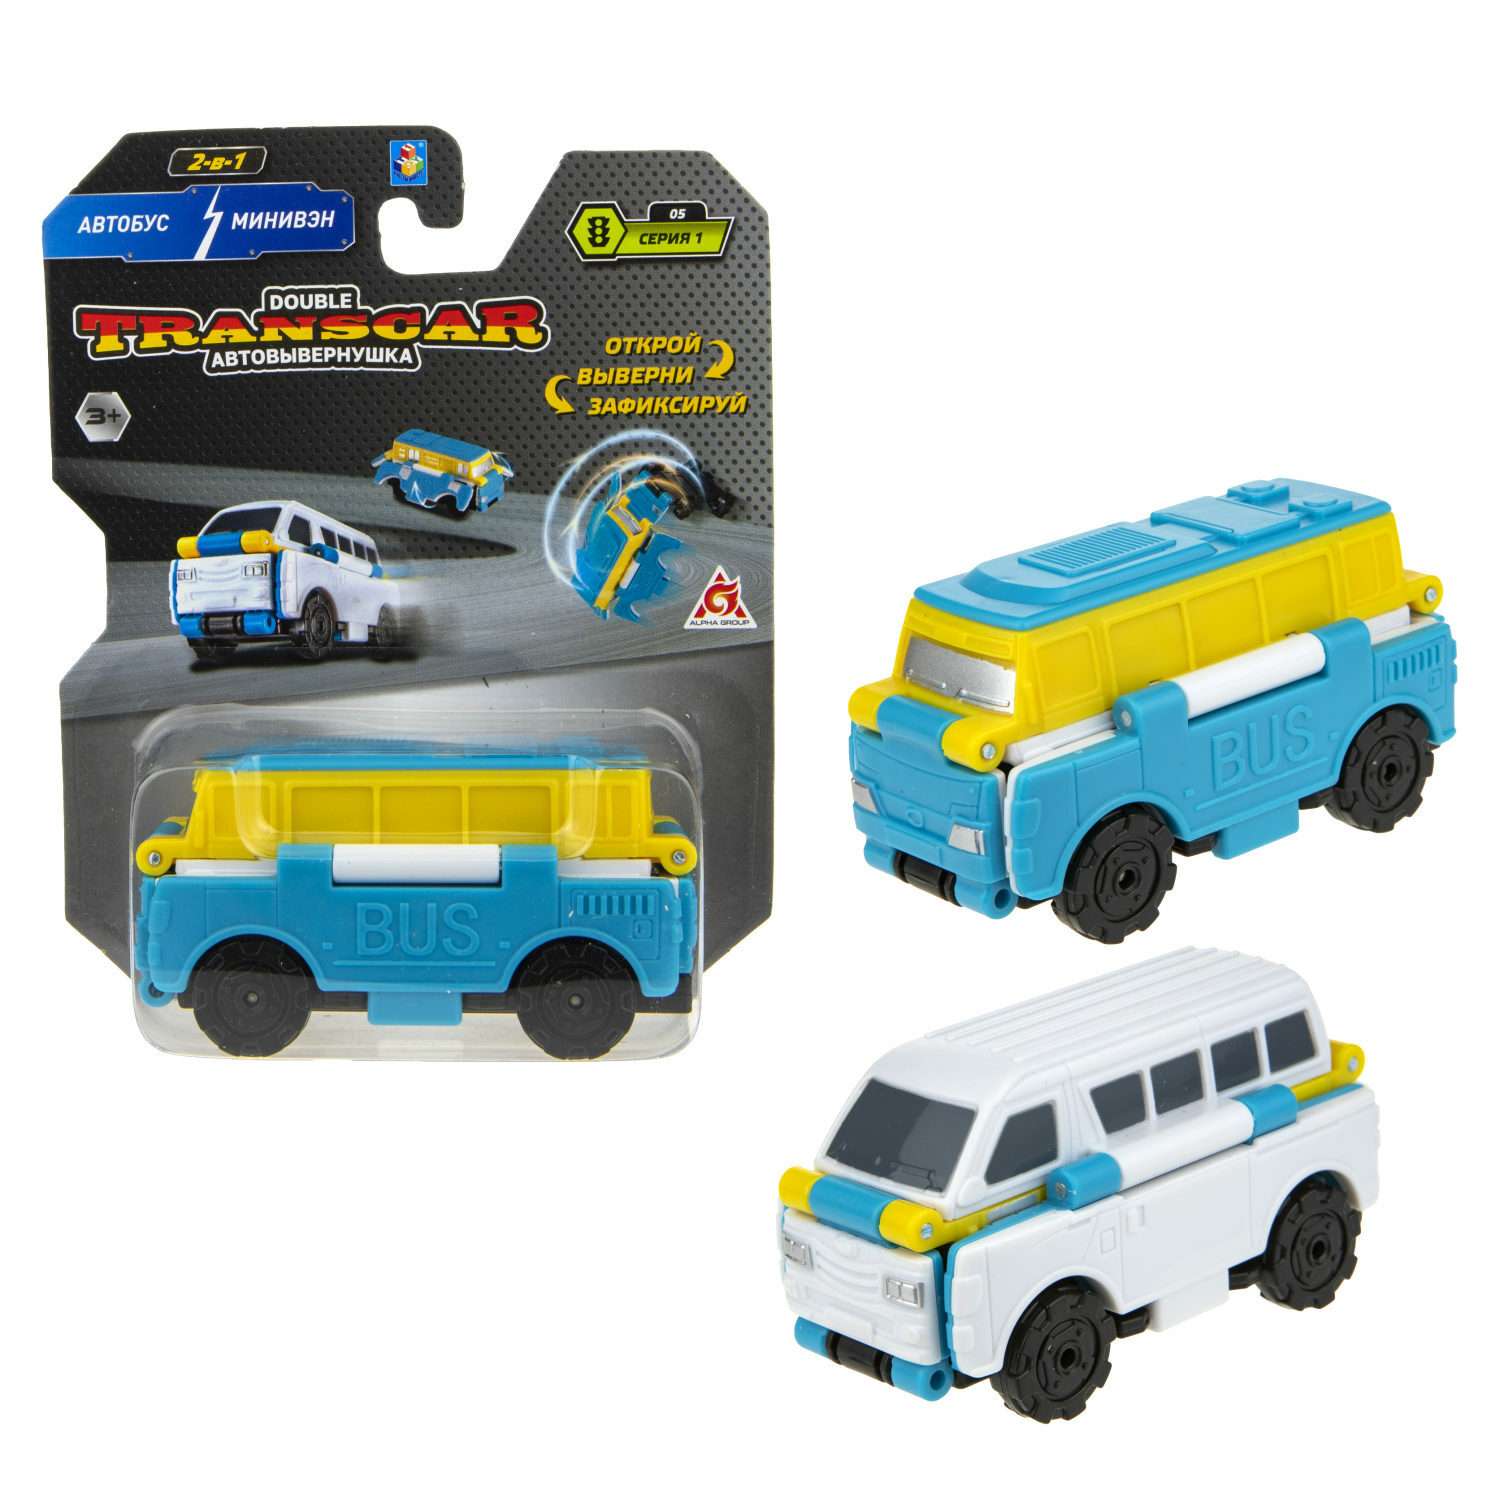 Машинка игрушечная Transcar Double Автовывернушка Автобус – Минивэн Т18280 - фото 2